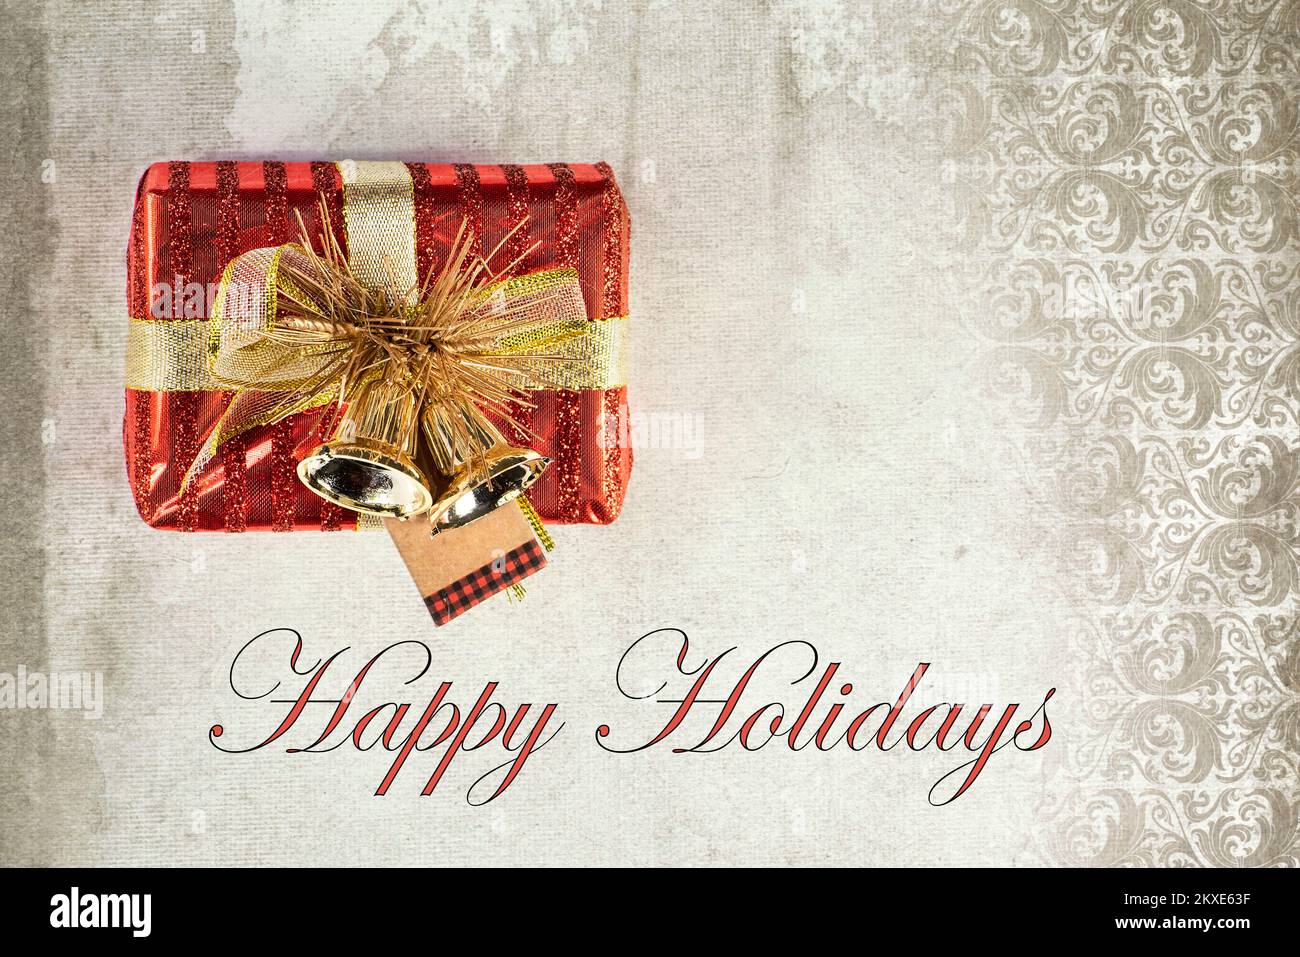 Pequeña caja de regalo envuelta en rojo con cinta y tarjeta de felicitación navideña con campanas y texto 'Happy Holidays'. Foto de stock